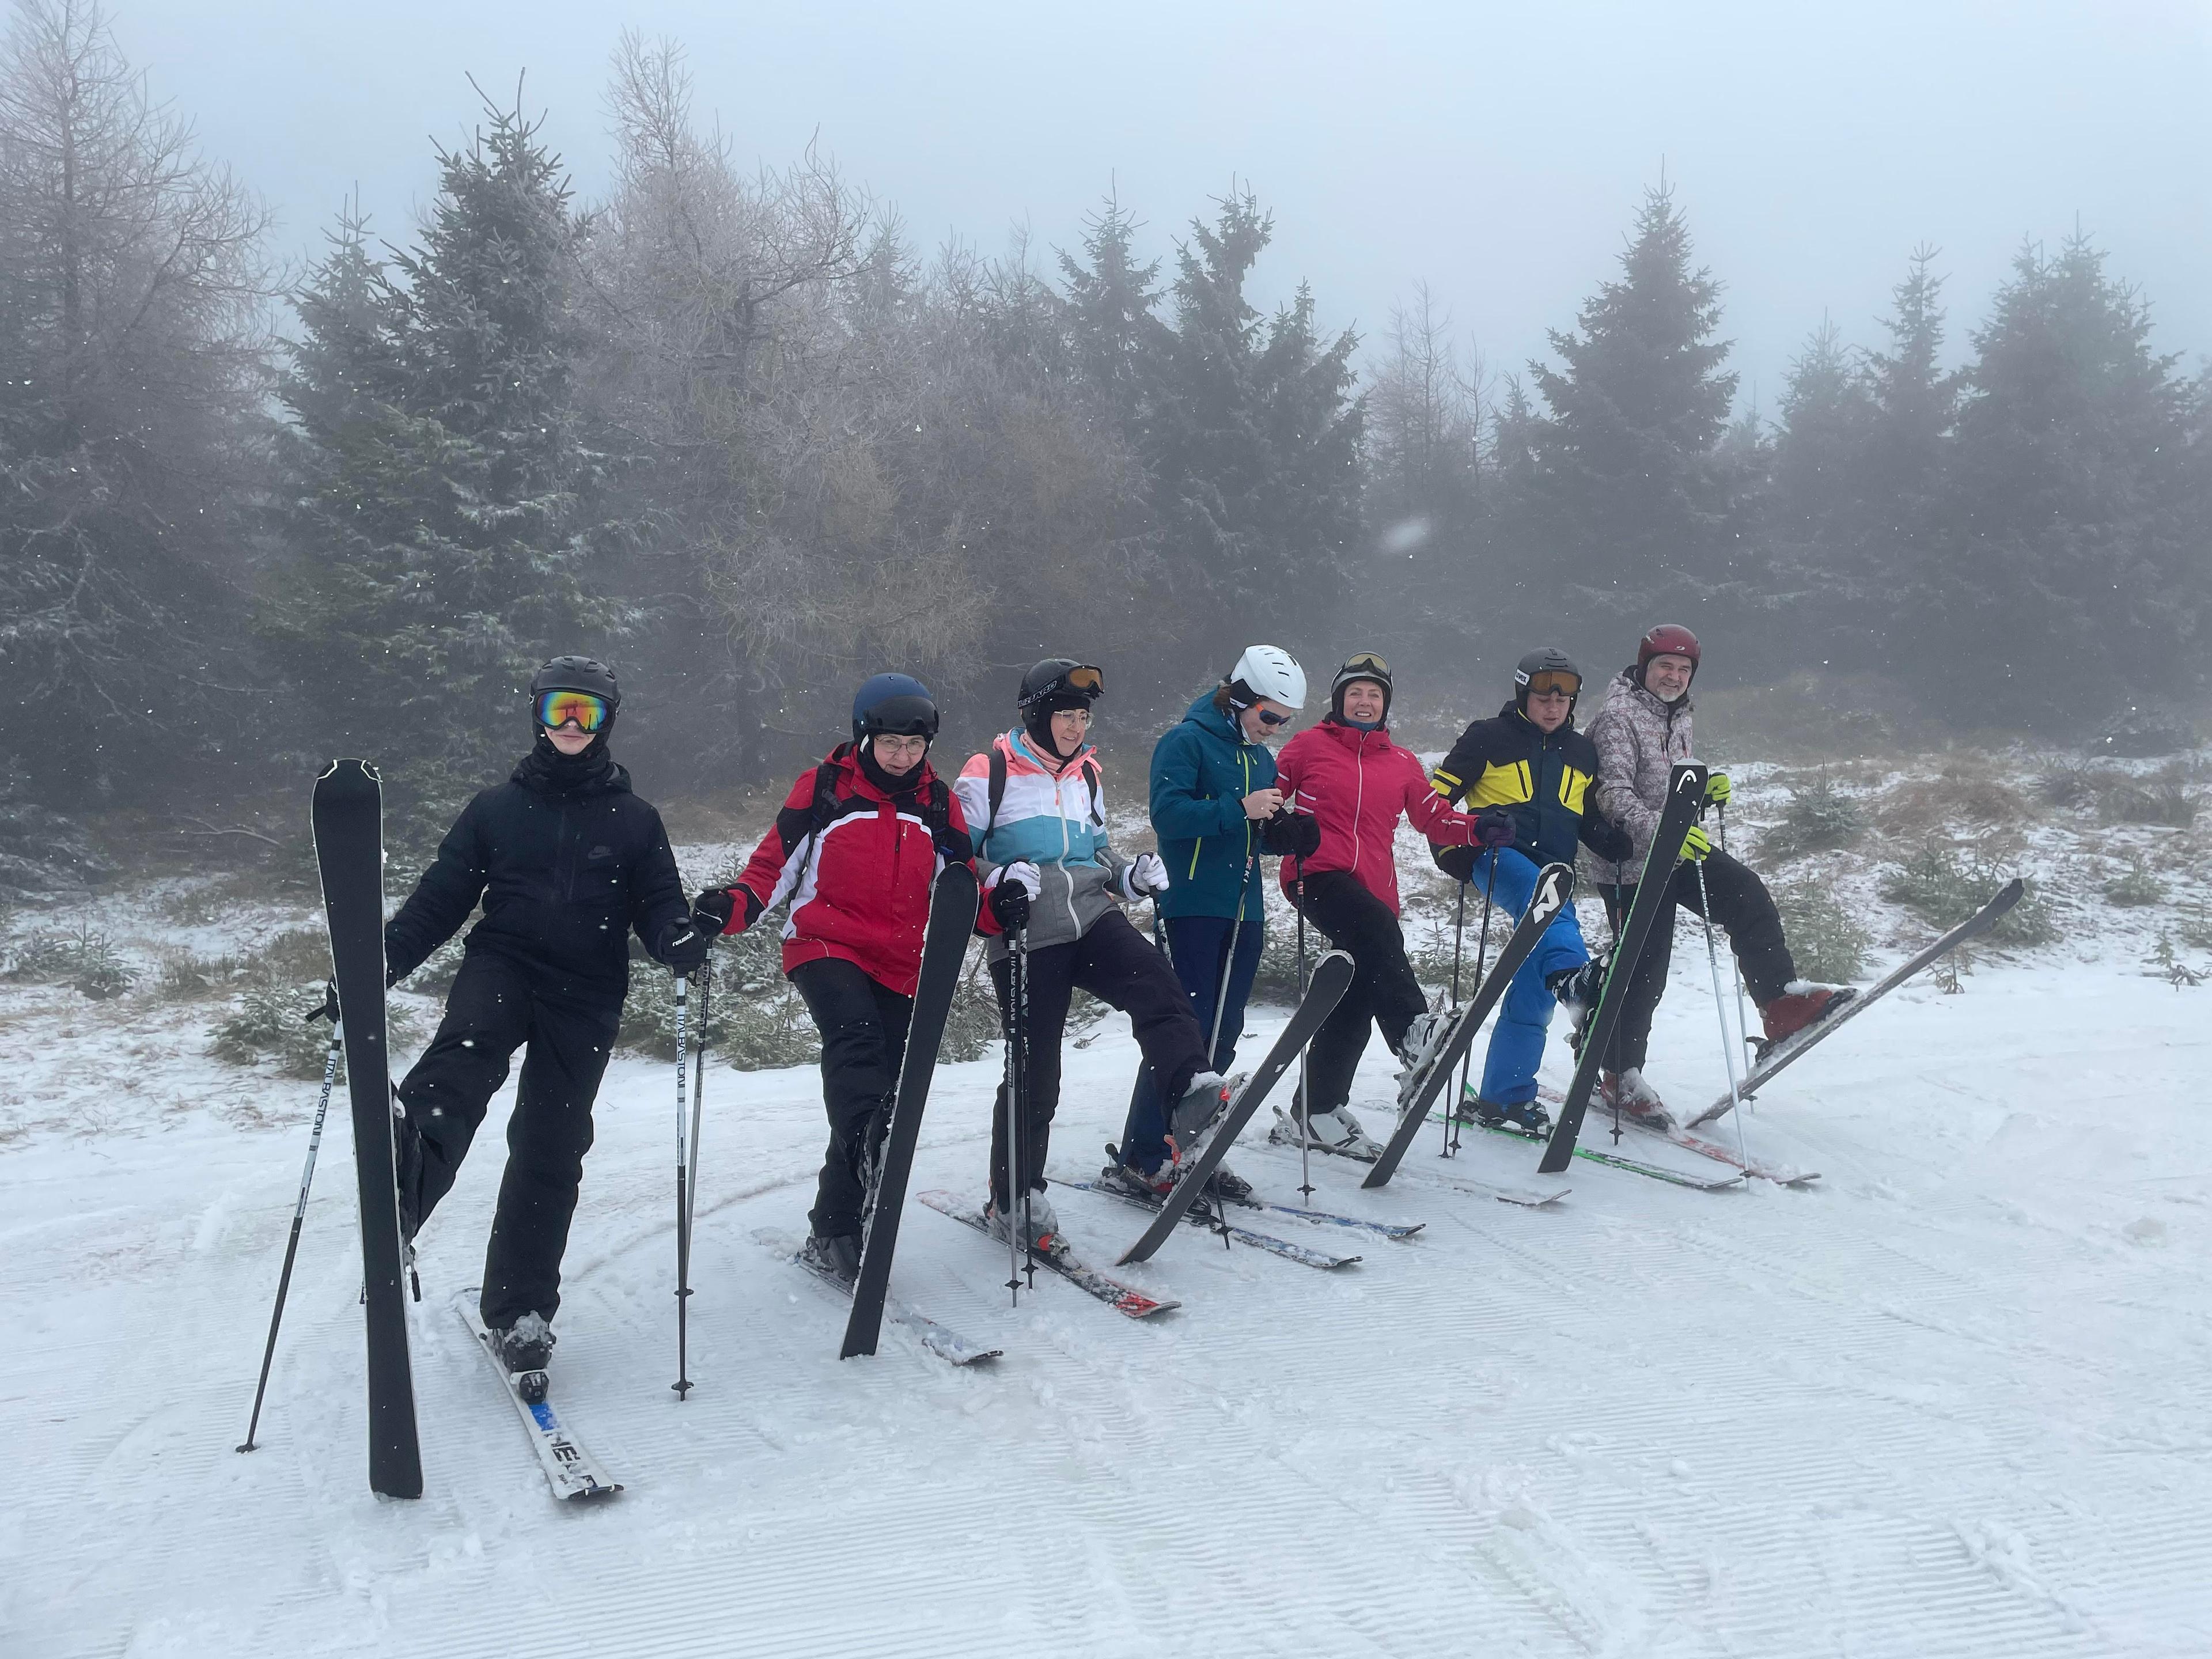 Od 18 do 25 lutego odbywał się obóz narciarski dla społeczności naszego Uniwersytetu zorganizowany przez Studium Wychowania Fizycznego